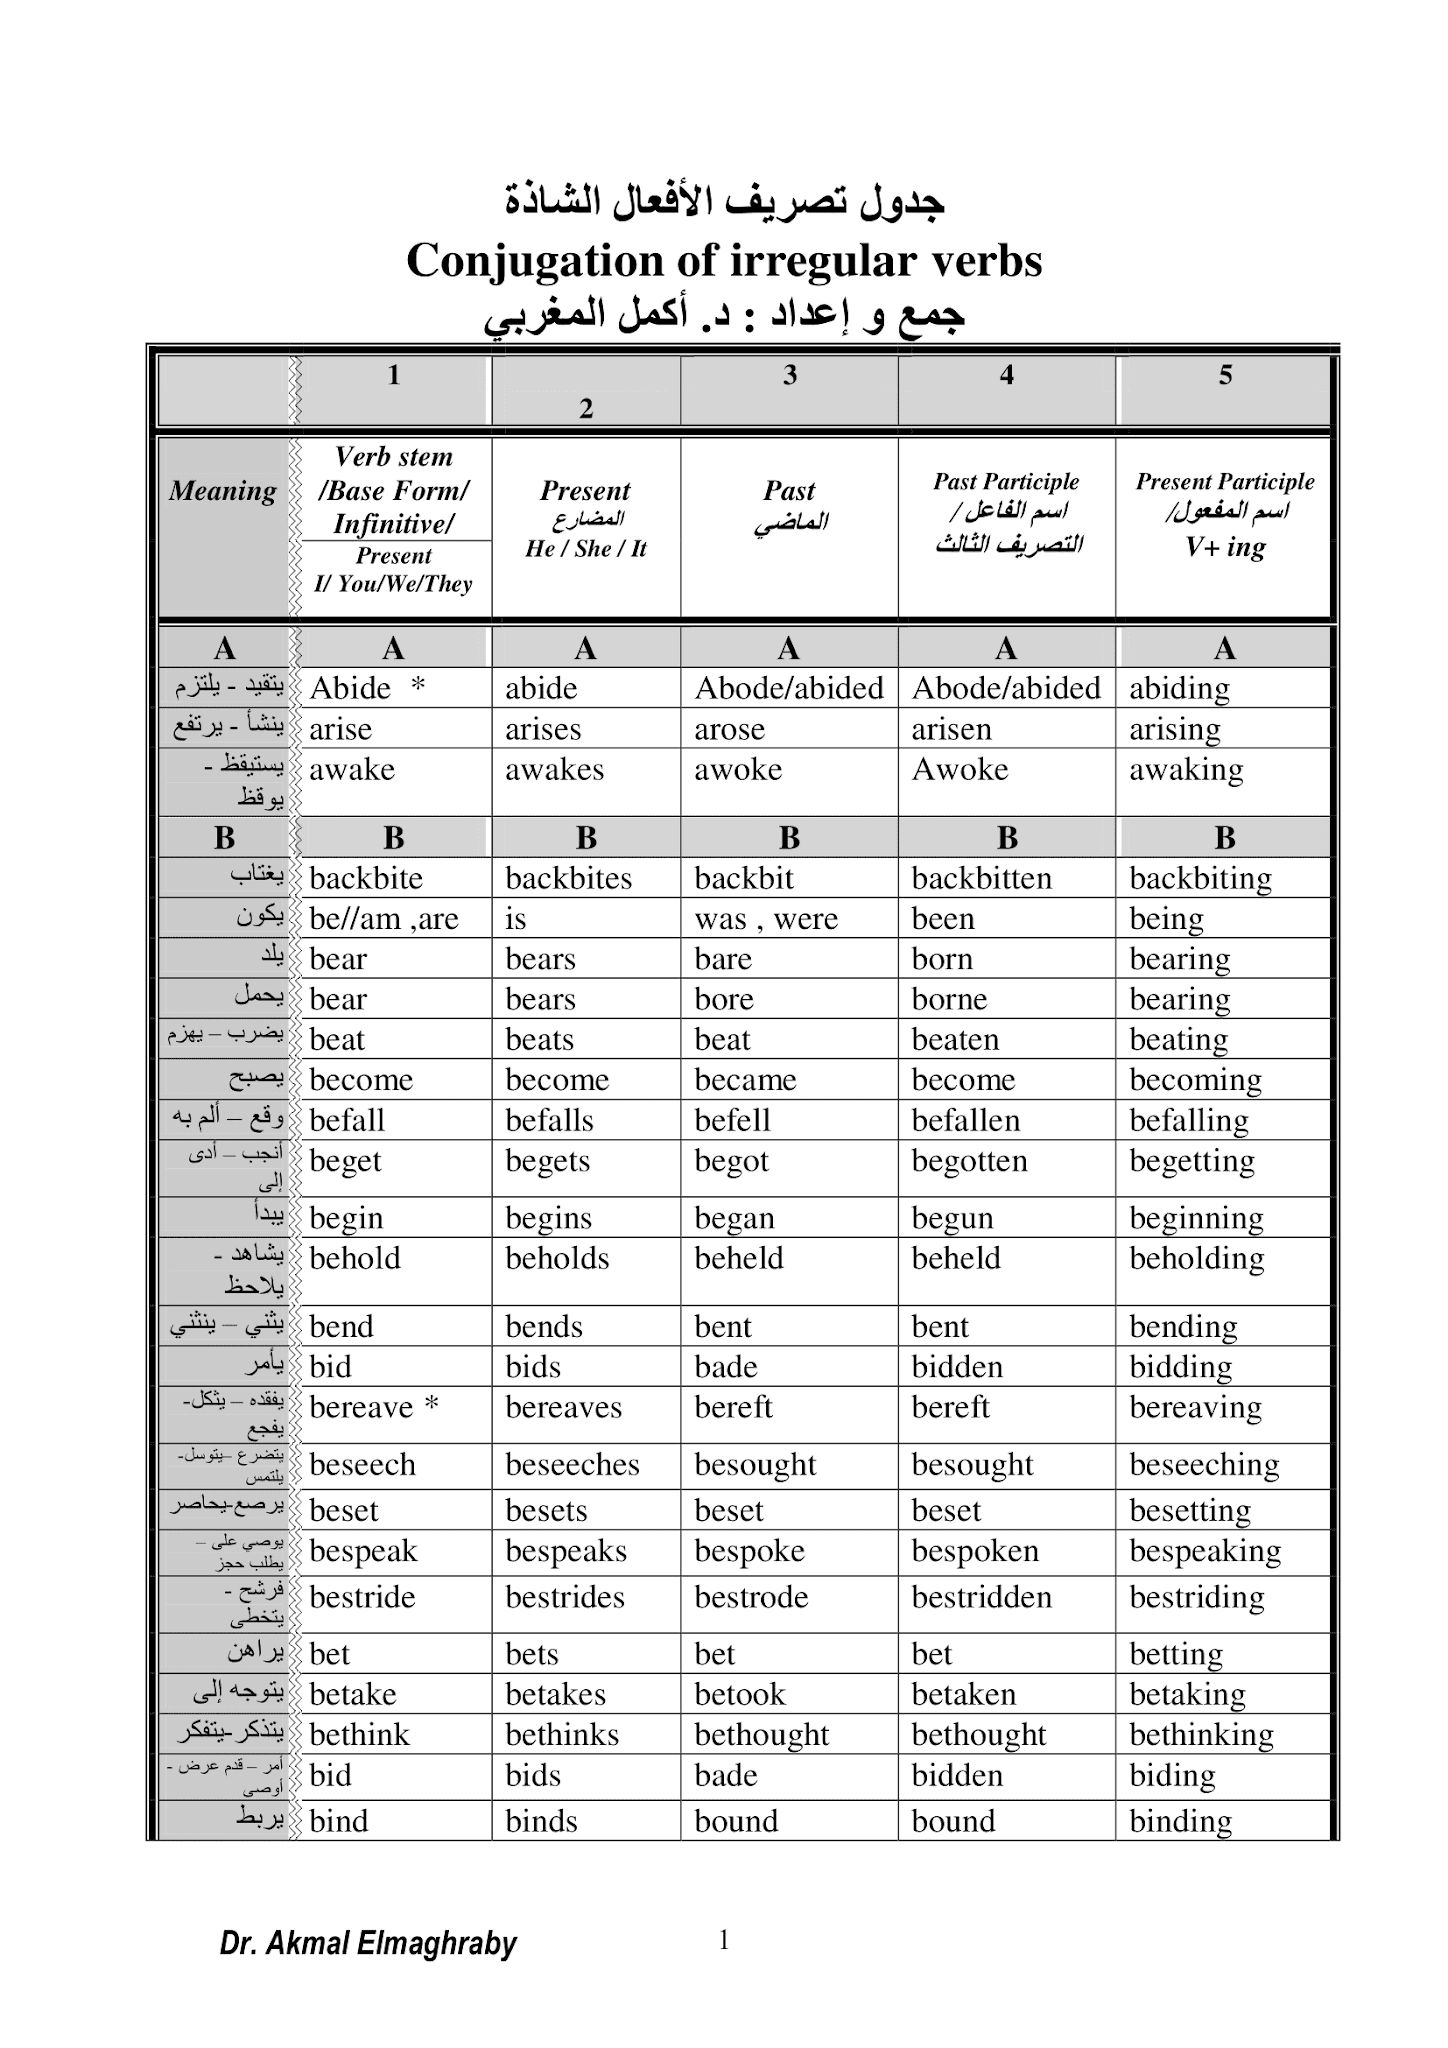 بالصور جدول تصريف الأفعال الشاذة في اللغة الانجيليزية مع الترجمة للعربية